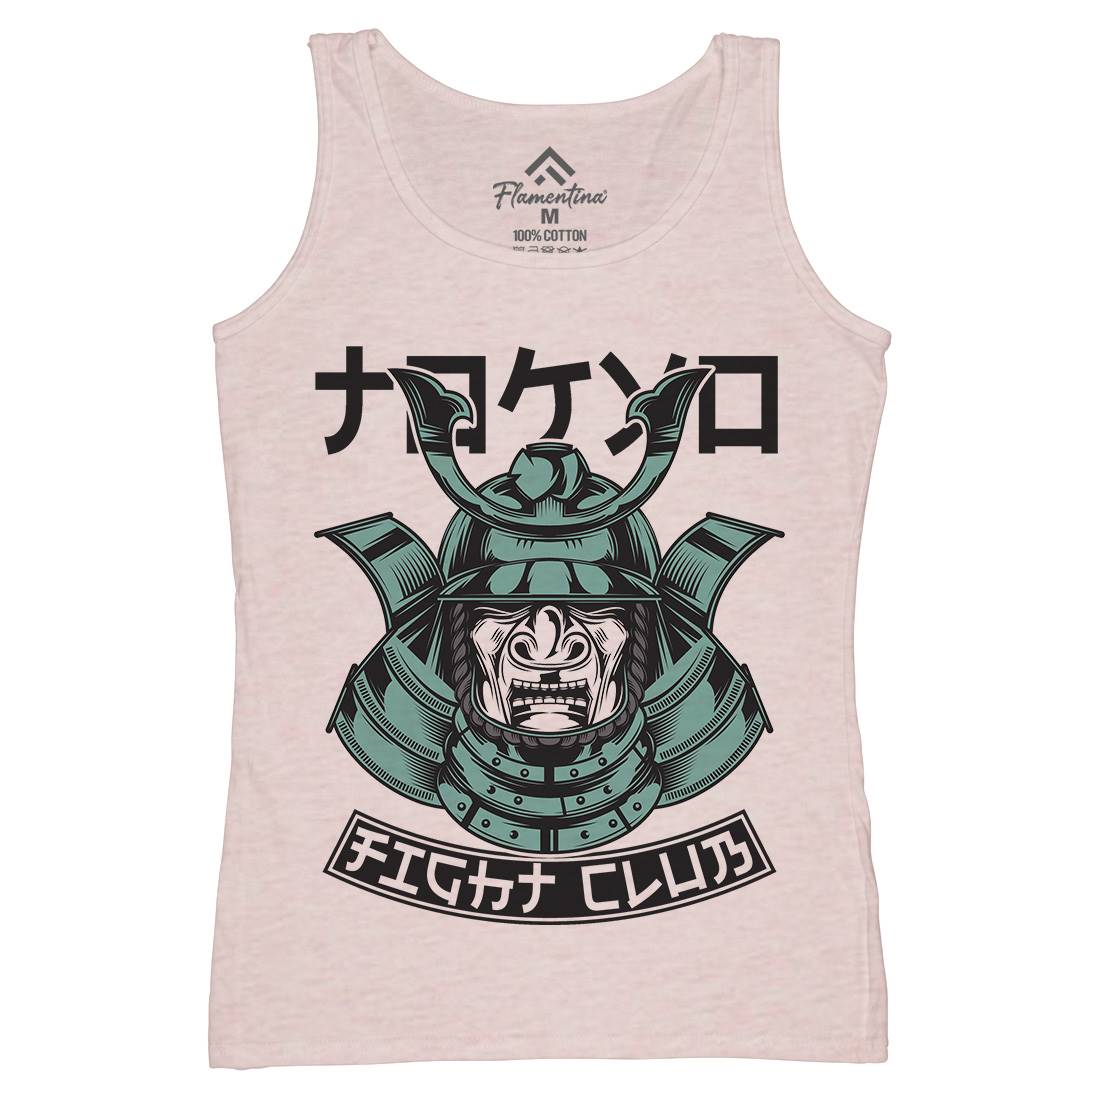 Fight Club Womens Organic Tank Top Vest Warriors C892